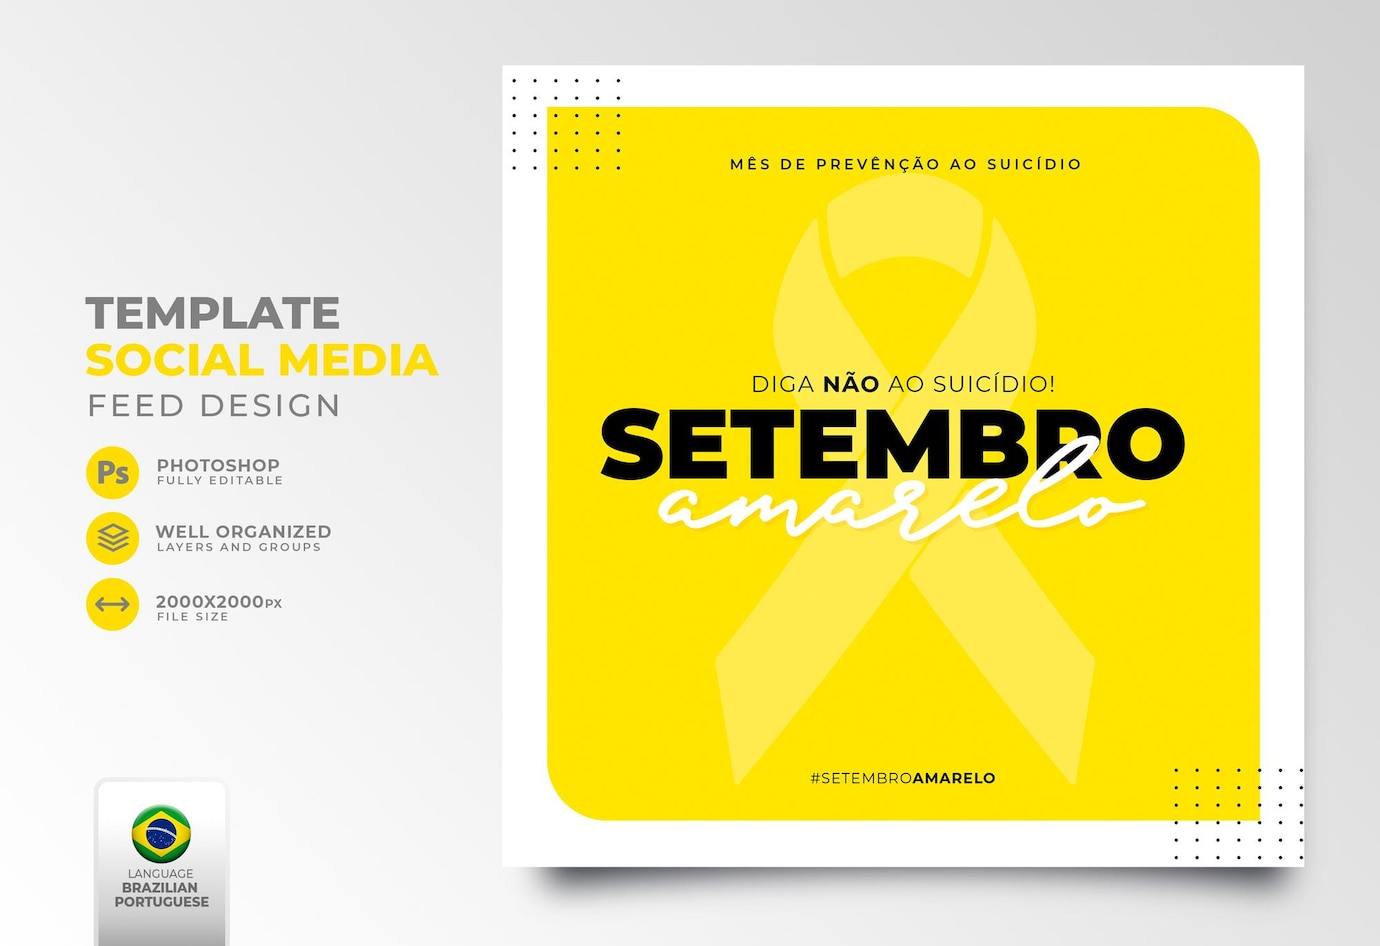 midias sociais postam setembro amarelo para campanha de marketing no brasil em renderizacao 3d 36345 2